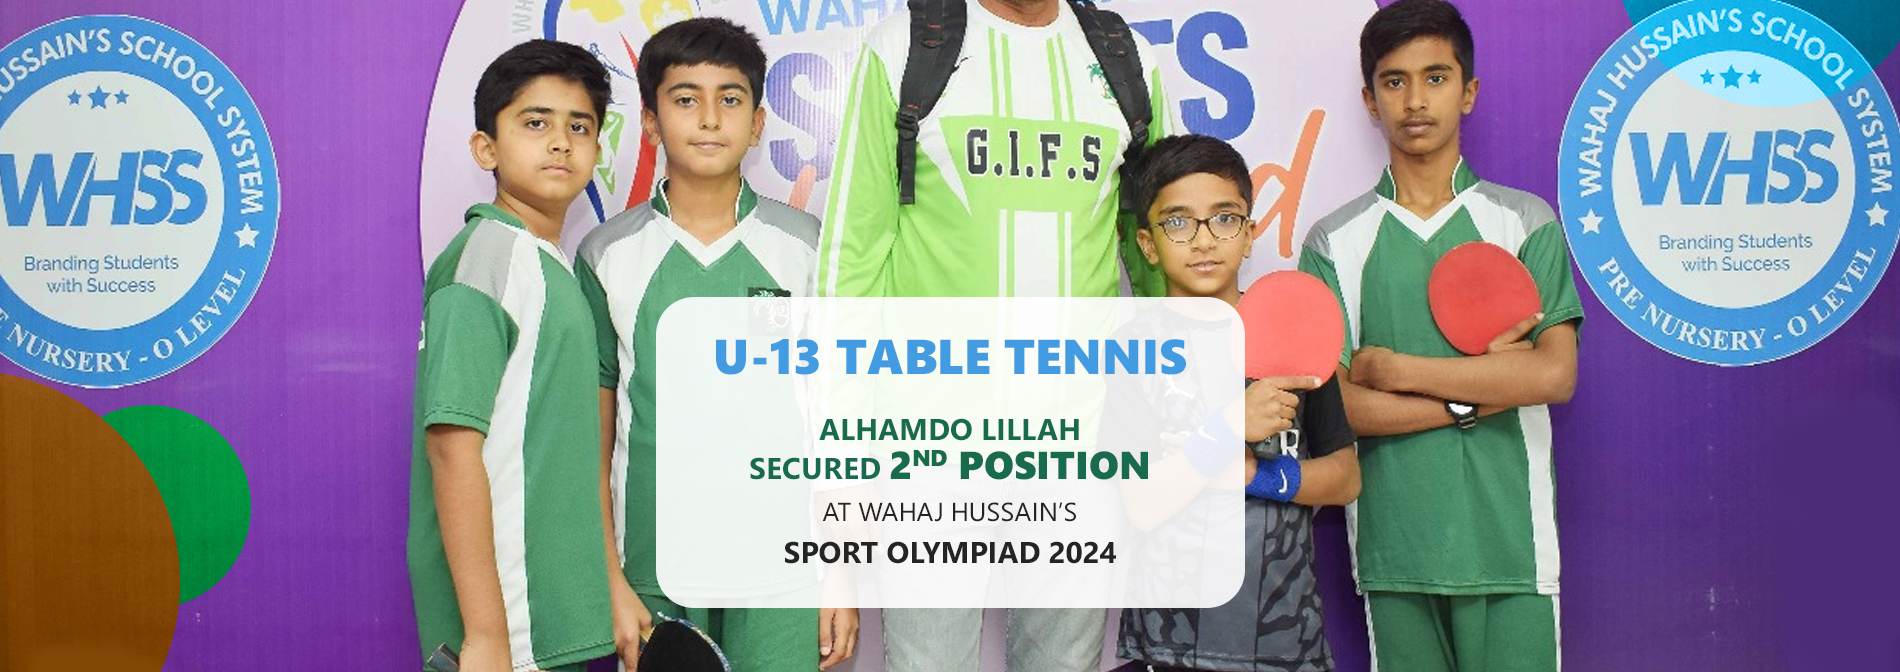 U-13 Table tennis